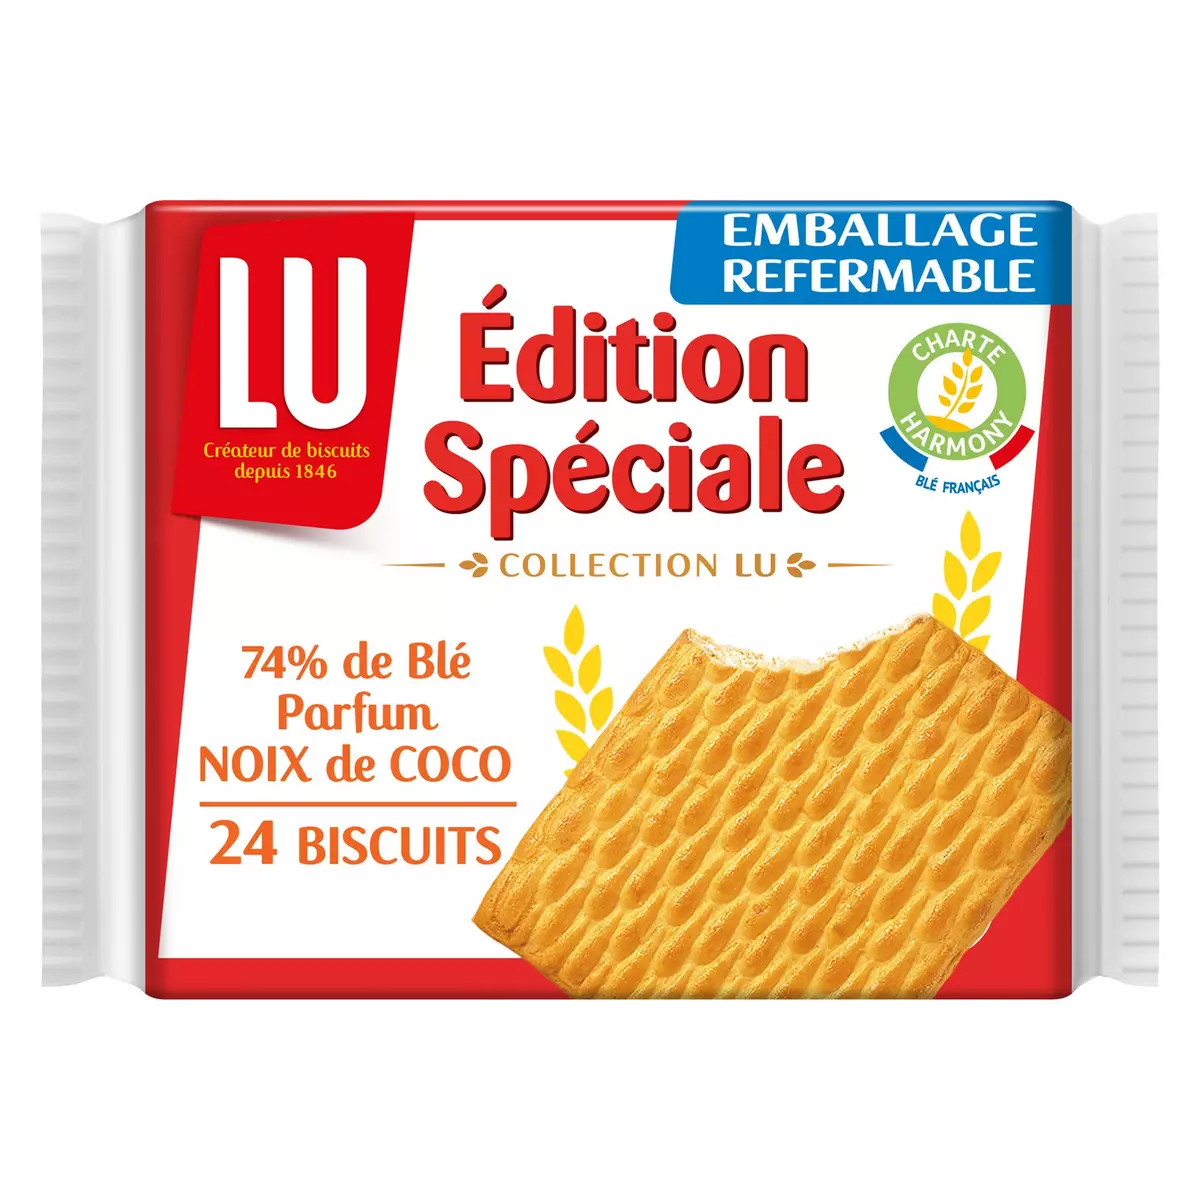 LU Edition spéciale biscuits petits beurre noix de coco 24 biscuits 150g